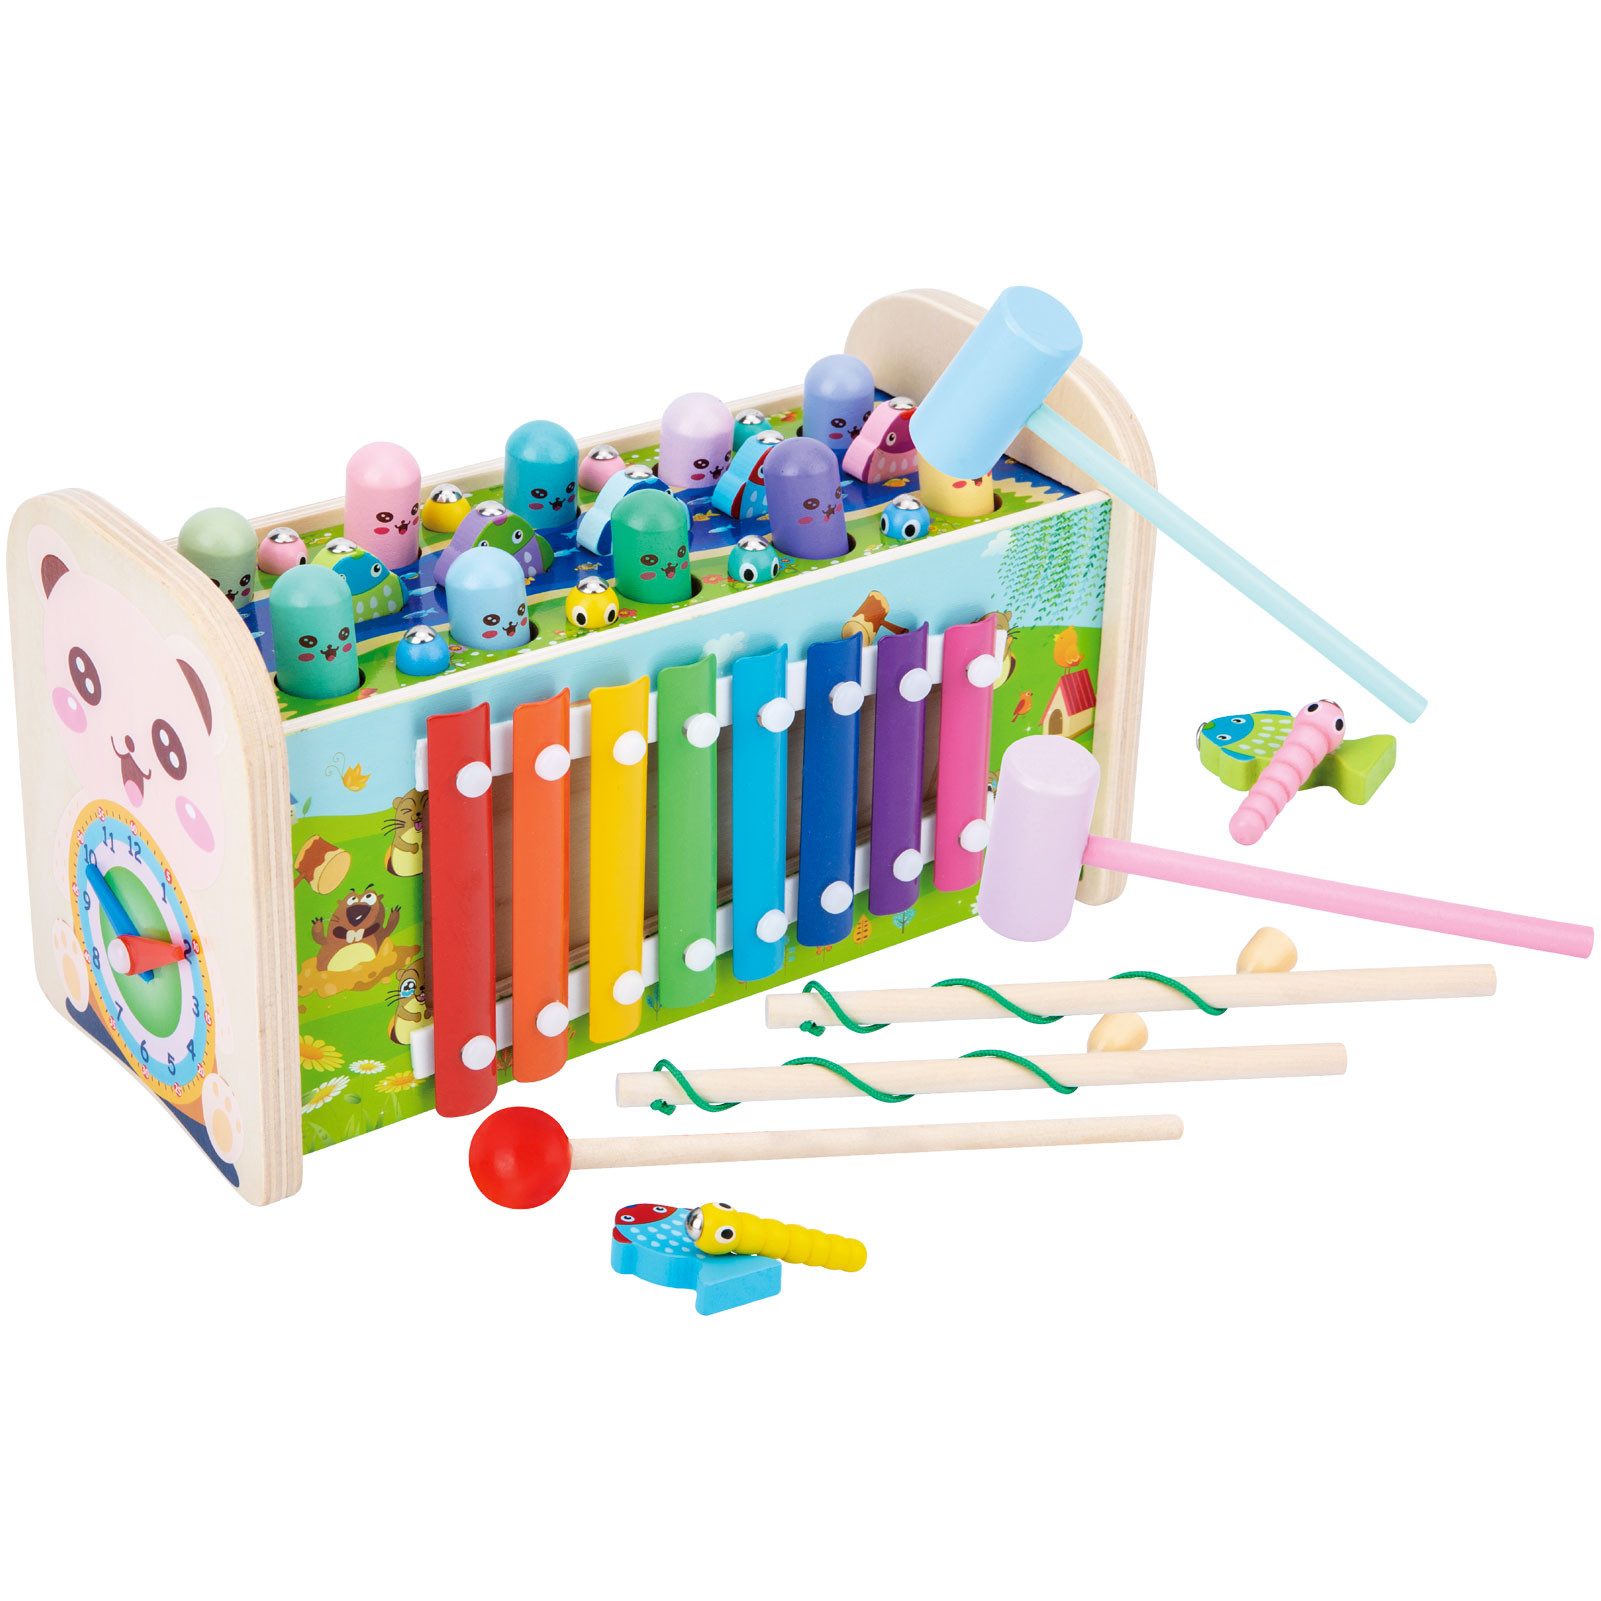 LBLA Lernspielzeug (7-in-1 Montessori Hammer- und Musikspielzeug, Holz Lernspielzeug mit Xylophon, Angelspiel, Wurm Fangen), für Kinder ab 2 Jahren